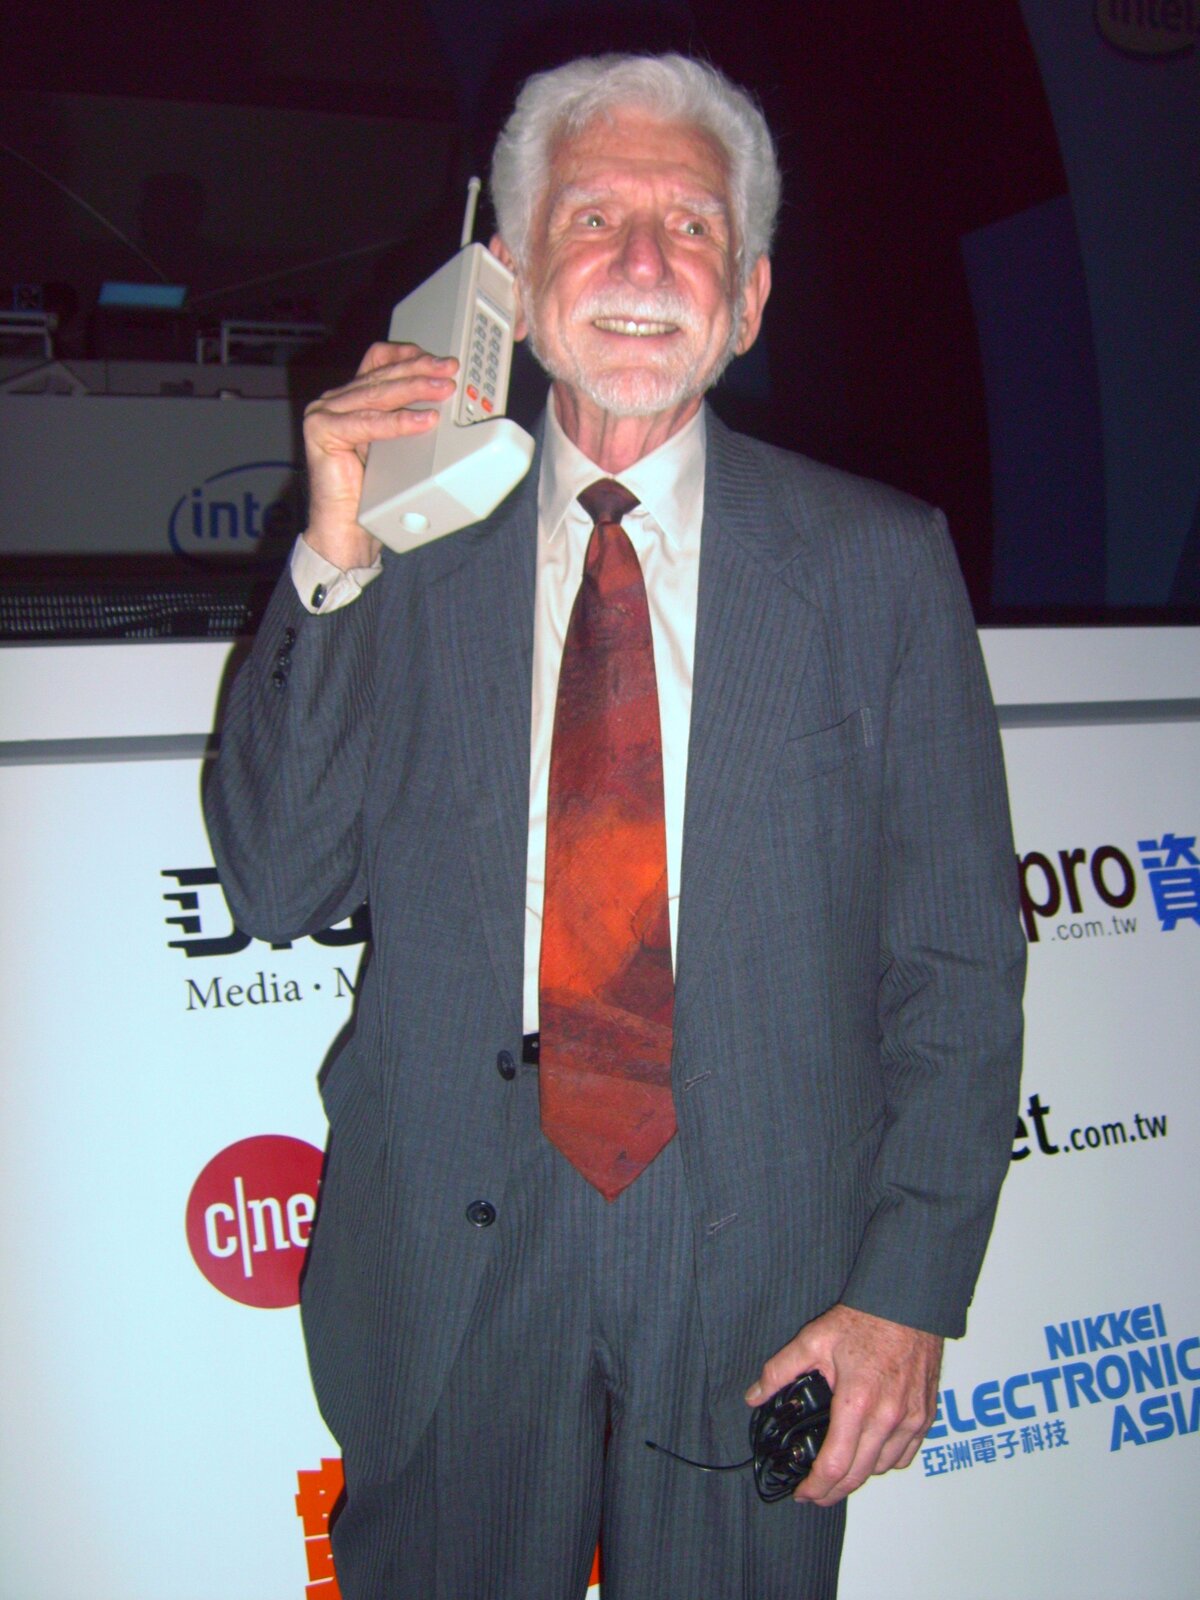 Ilustracja przedstawiająca Martina Coopera z prototypem telefonu komórkowego. Trzyma on w ręku przy uchu duży bezprzewodowy telefon z antenką. W drugiej ręce ma ładowarkę do tego telefonu. W tle znajduje się ścianka z logami różnych firm komputerowych.